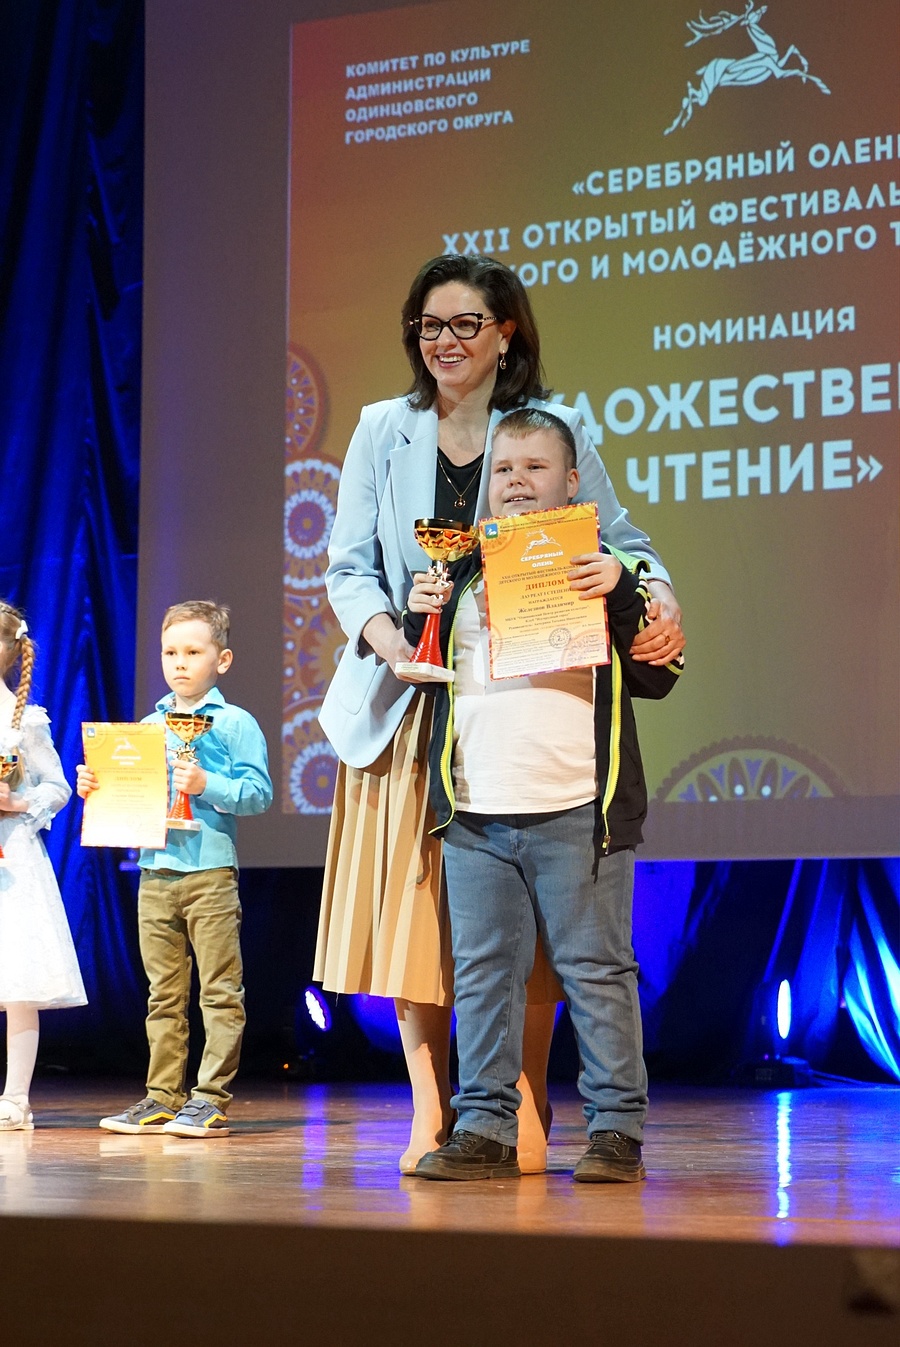 В Одинцовском городском округе прошел первый день награждения лауреатов фестиваля «Серебряный олень», Май